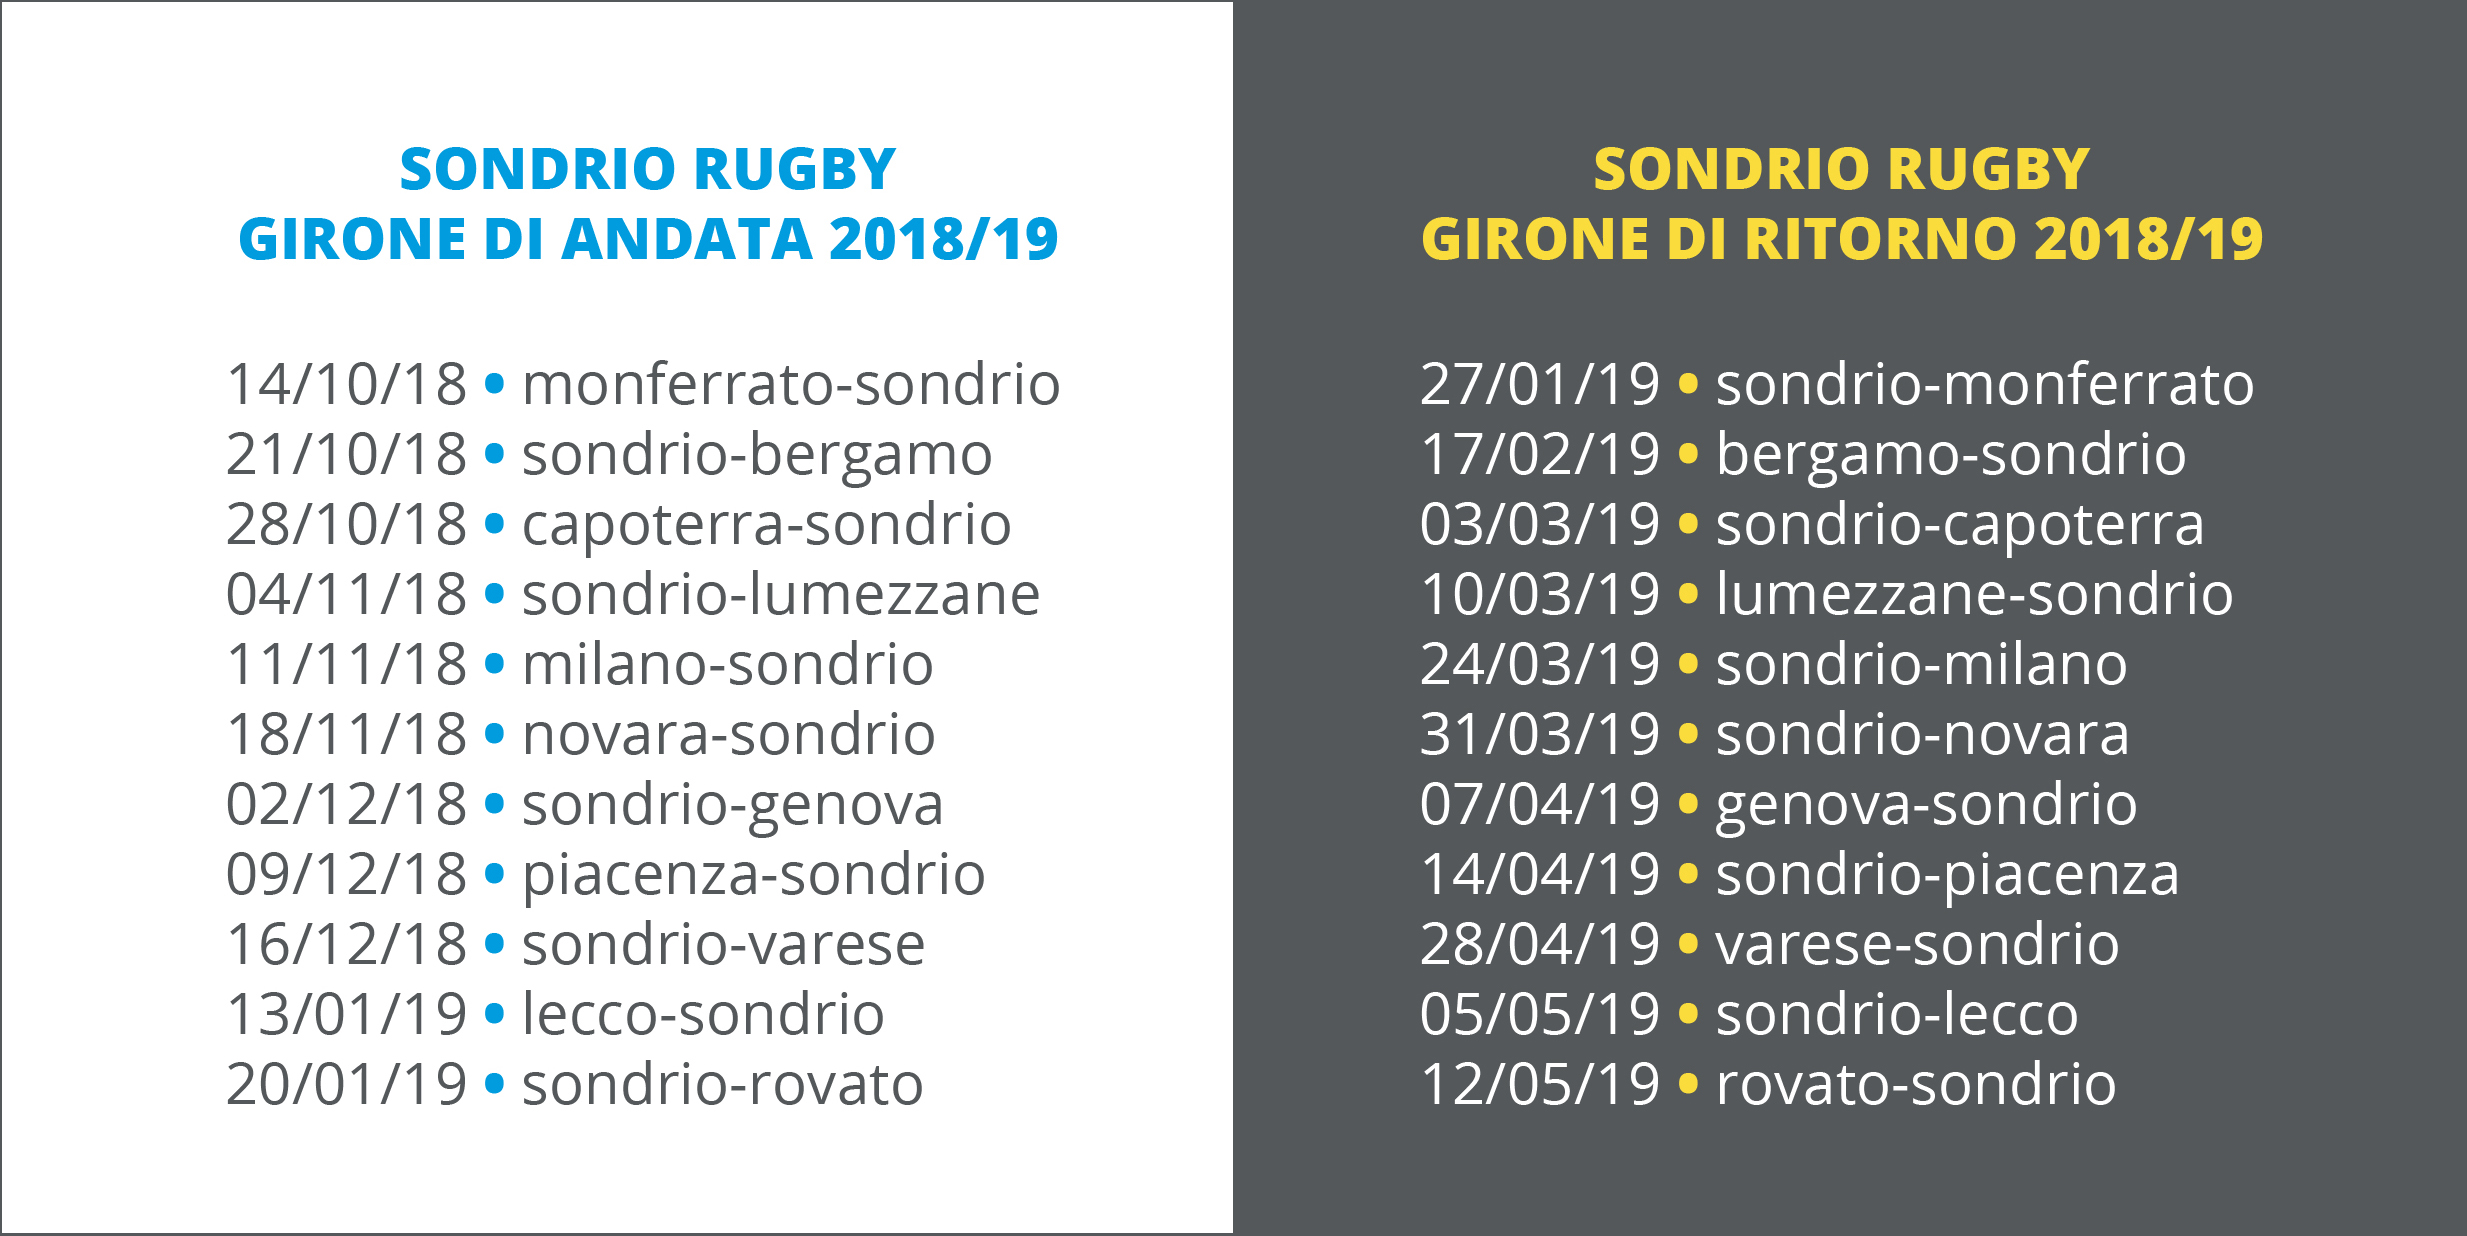 Incontri 2018/19 del Sondrio Rugby